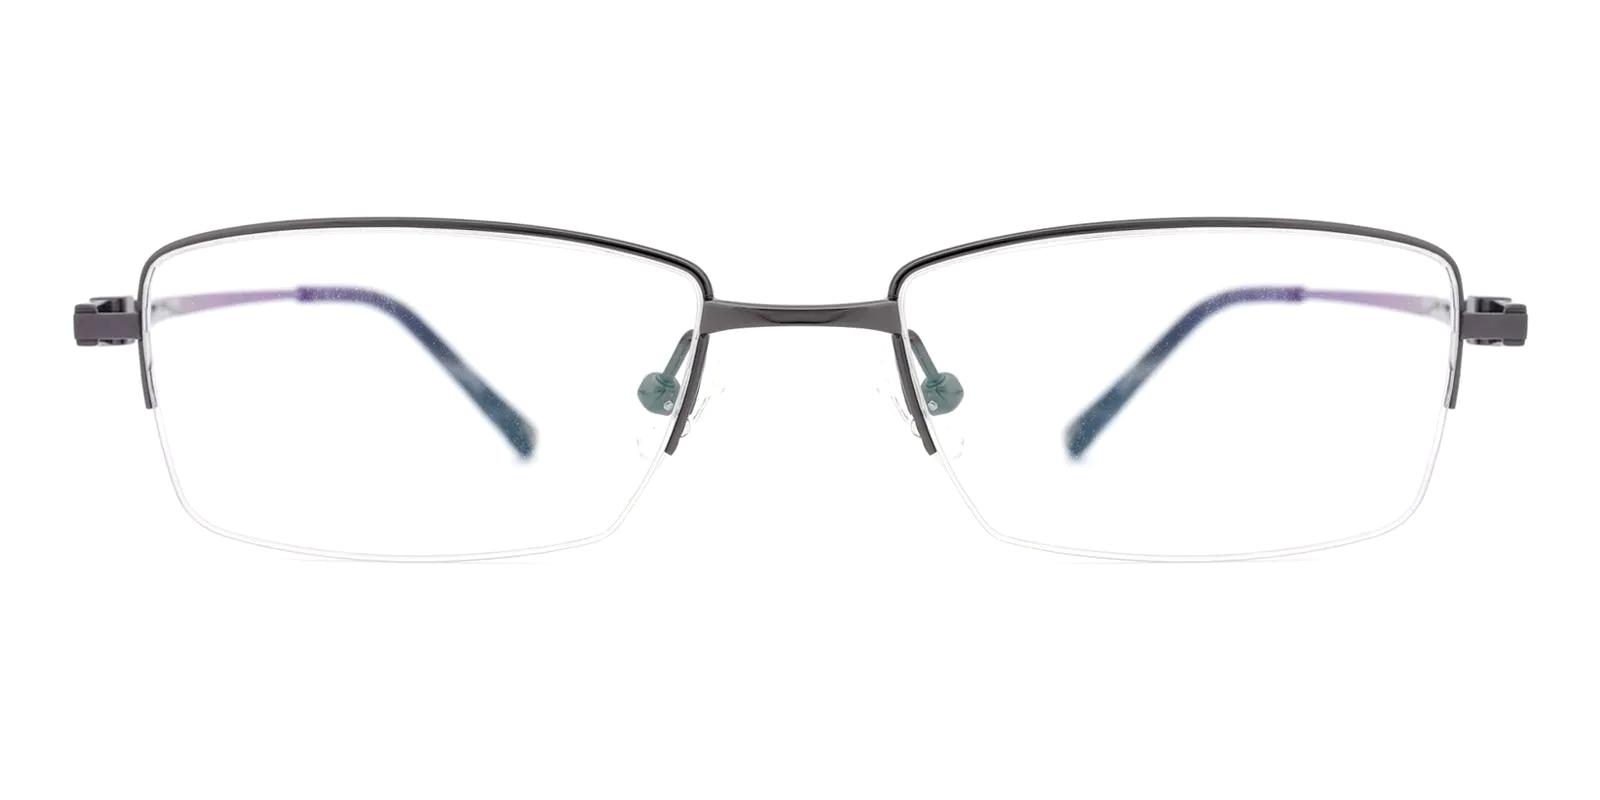 Torsior Gun Titanium Eyeglasses , NosePads Frames from ABBE Glasses